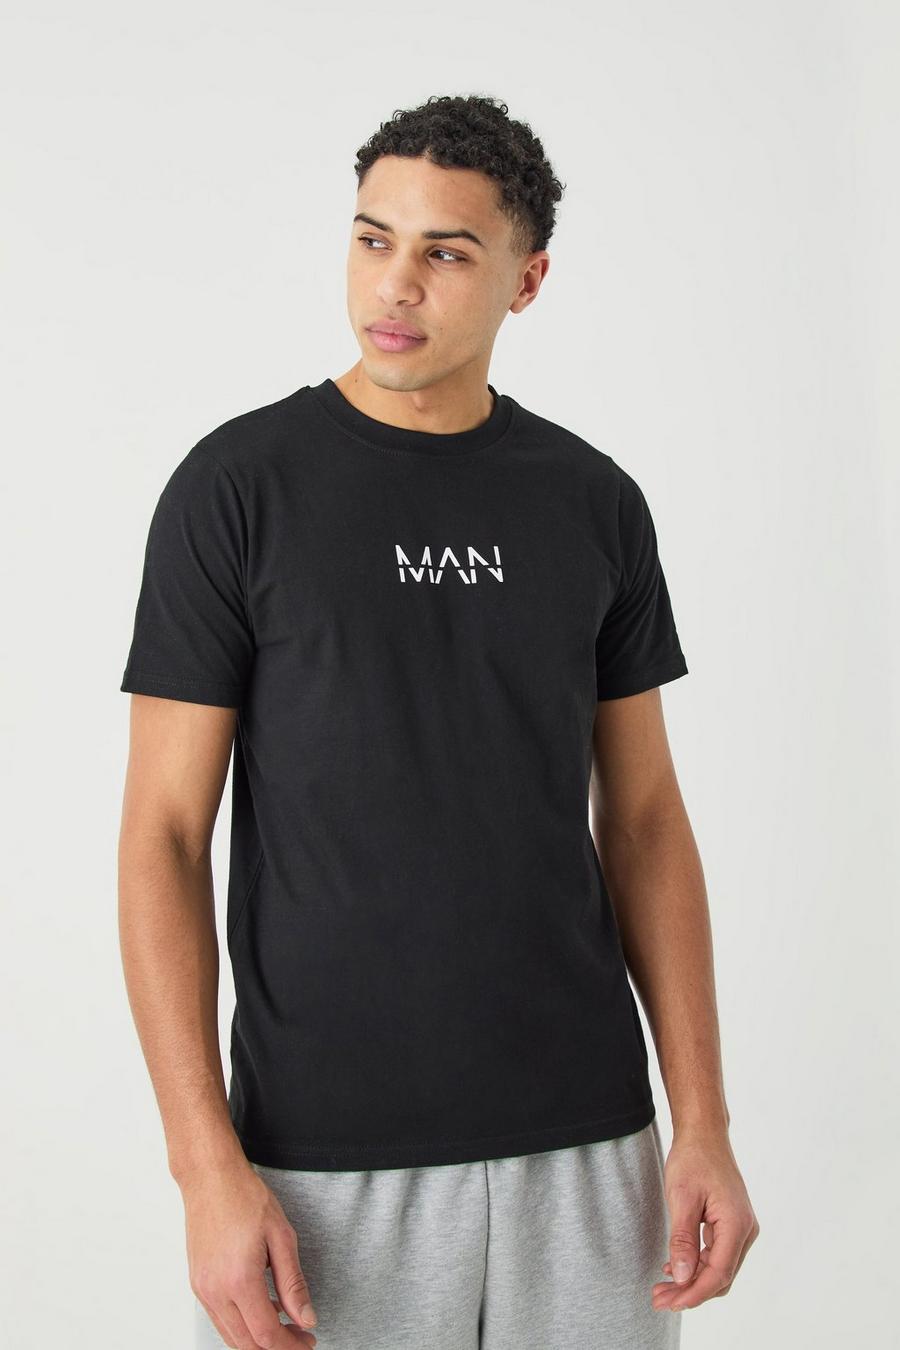 Camiseta MAN ajustada, Black